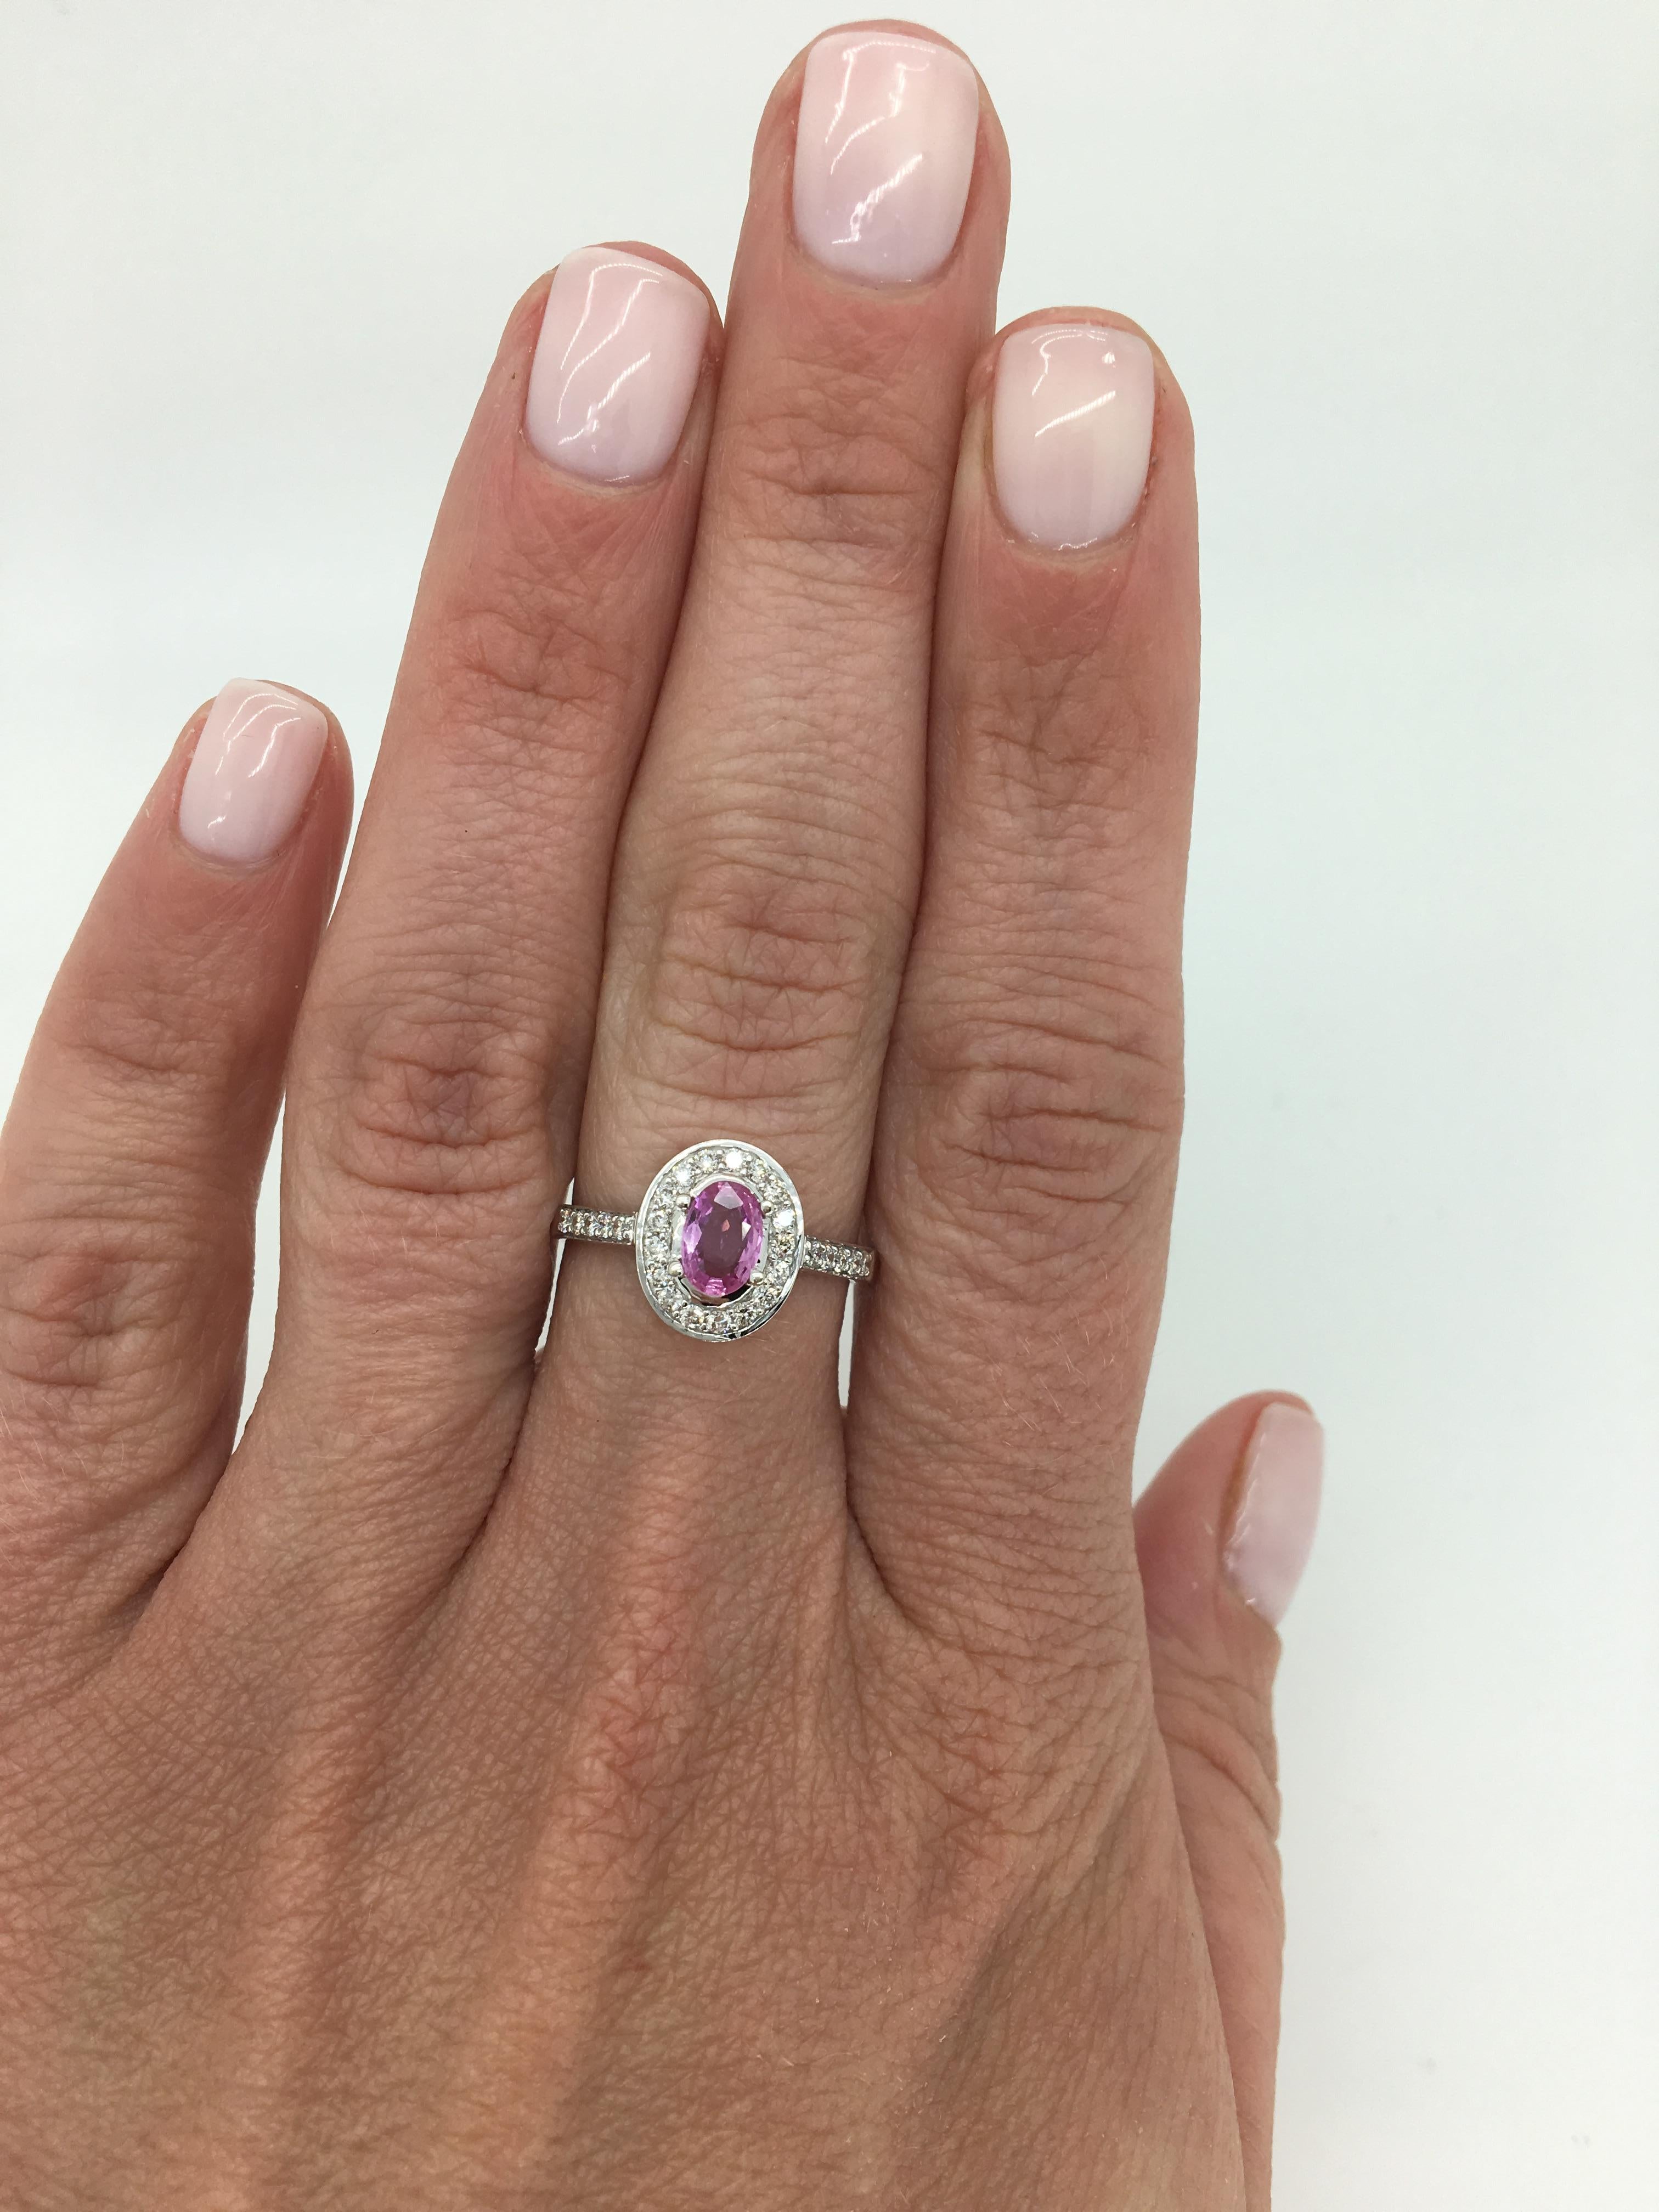 Halo style Pink Topaz and diamond ring. 

Gemstone: Pink Topaz and Diamond
Gemstone Carat Weight: Approximately .55CT Oval Cut
Diamond Carat Weight: Approximately .30CTW
Diamond Cut: Round Brilliant Cut
Color: Average G-I
Clarity: Average